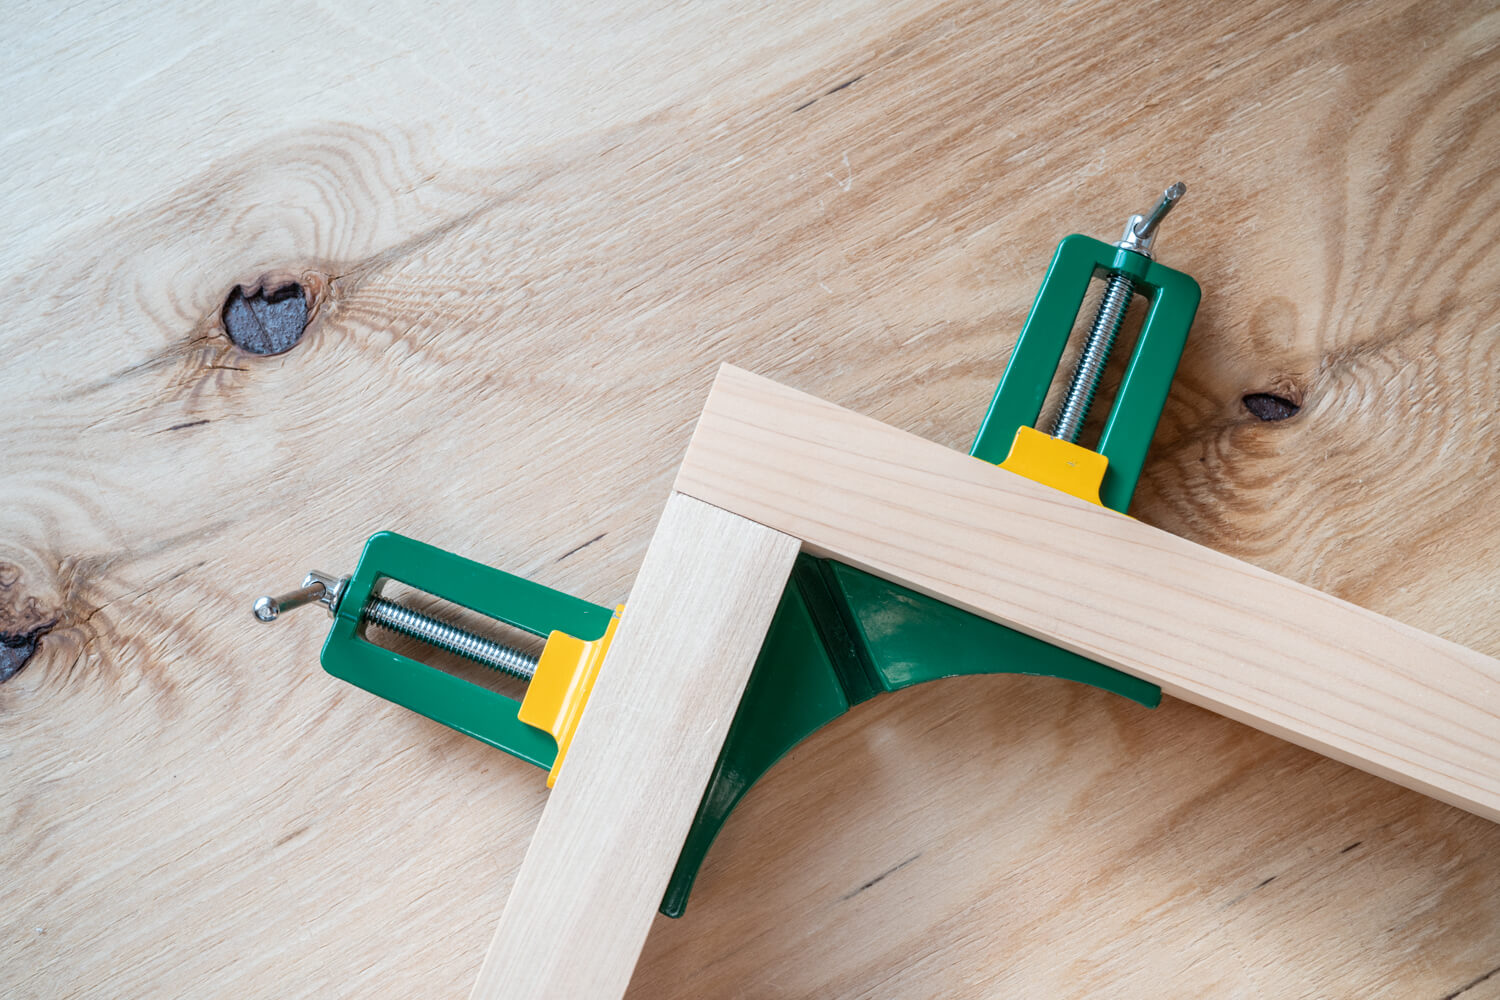 コーナークランプの使い方、木材の直角固定にDIYで便利なアイテム | 99% DIY -DIYブログ-